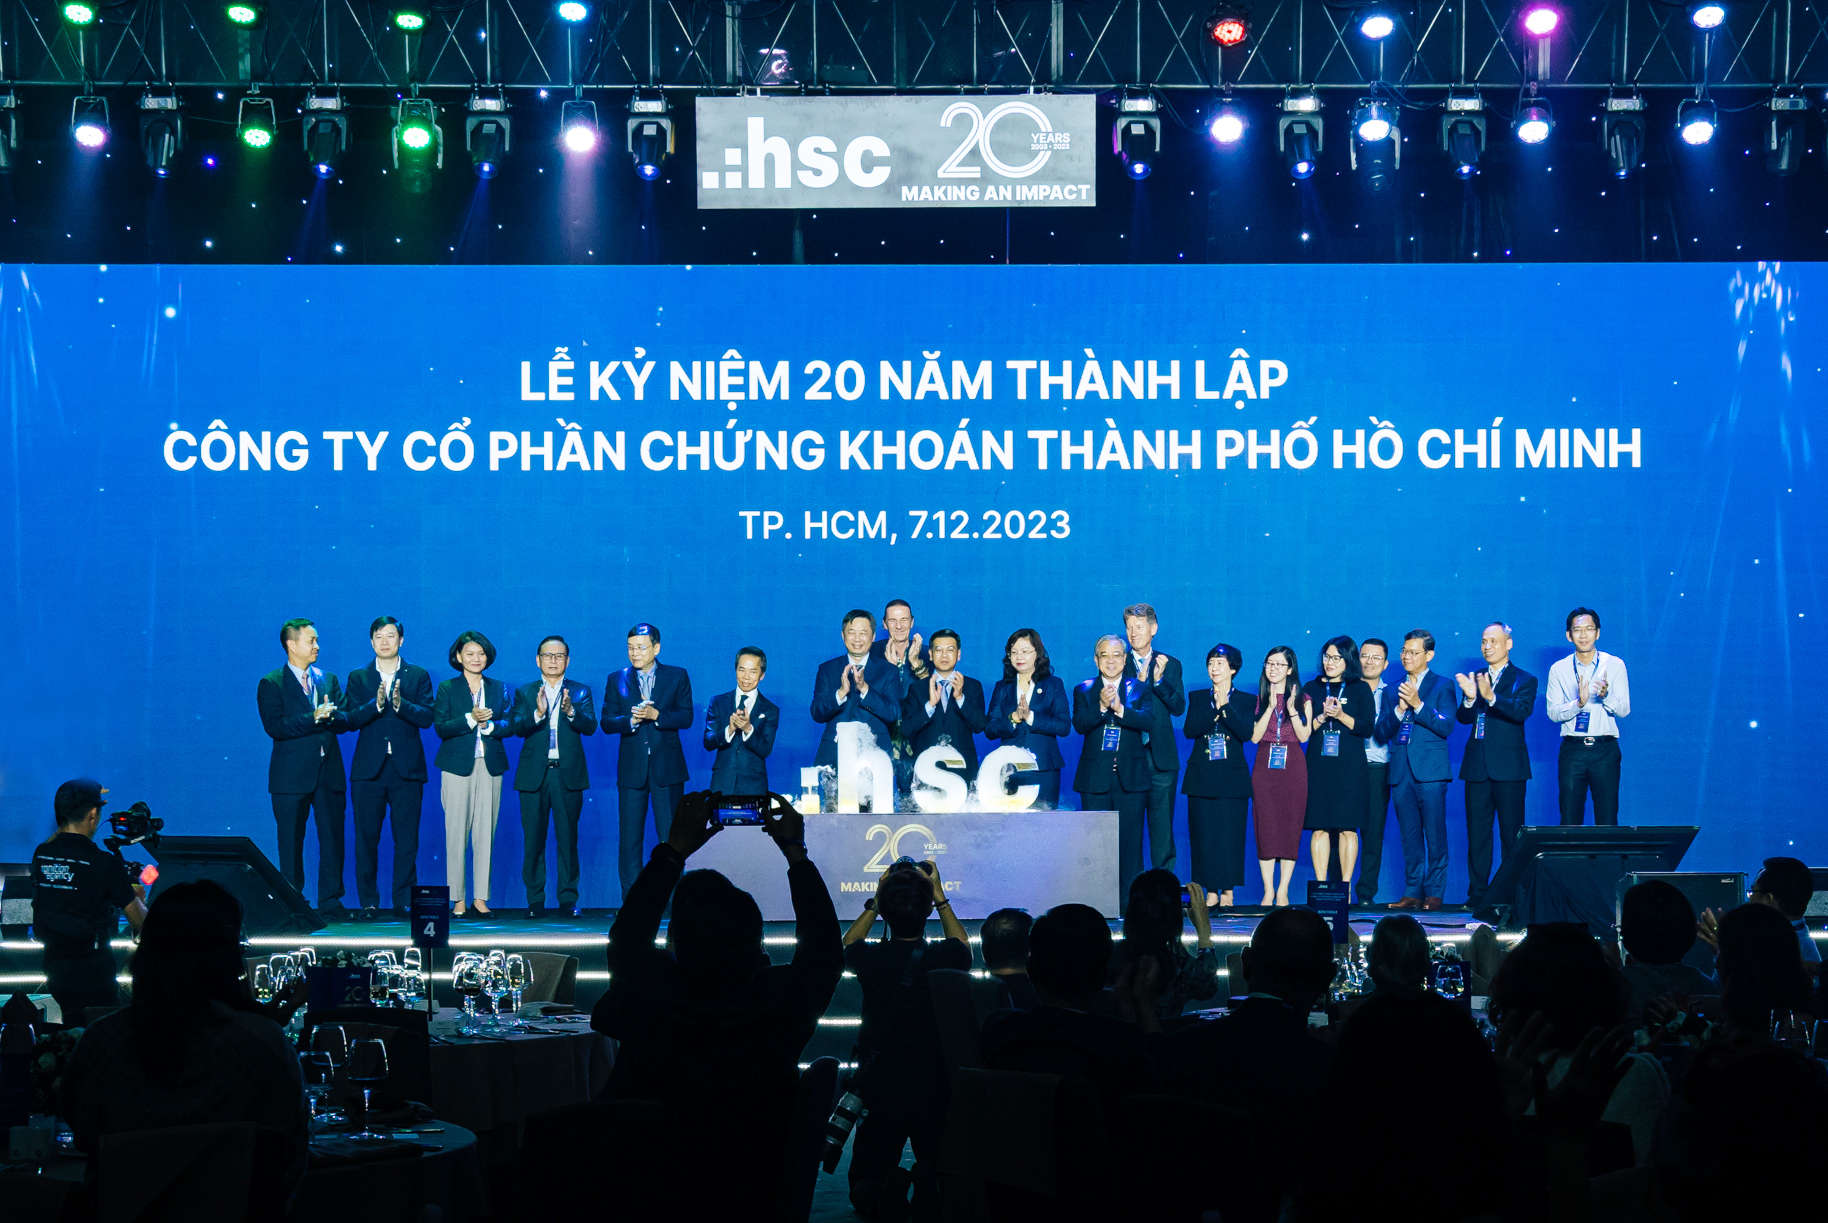 HSC – Hành trình 20 năm phát triển cùng thị trường vốn Việt Nam